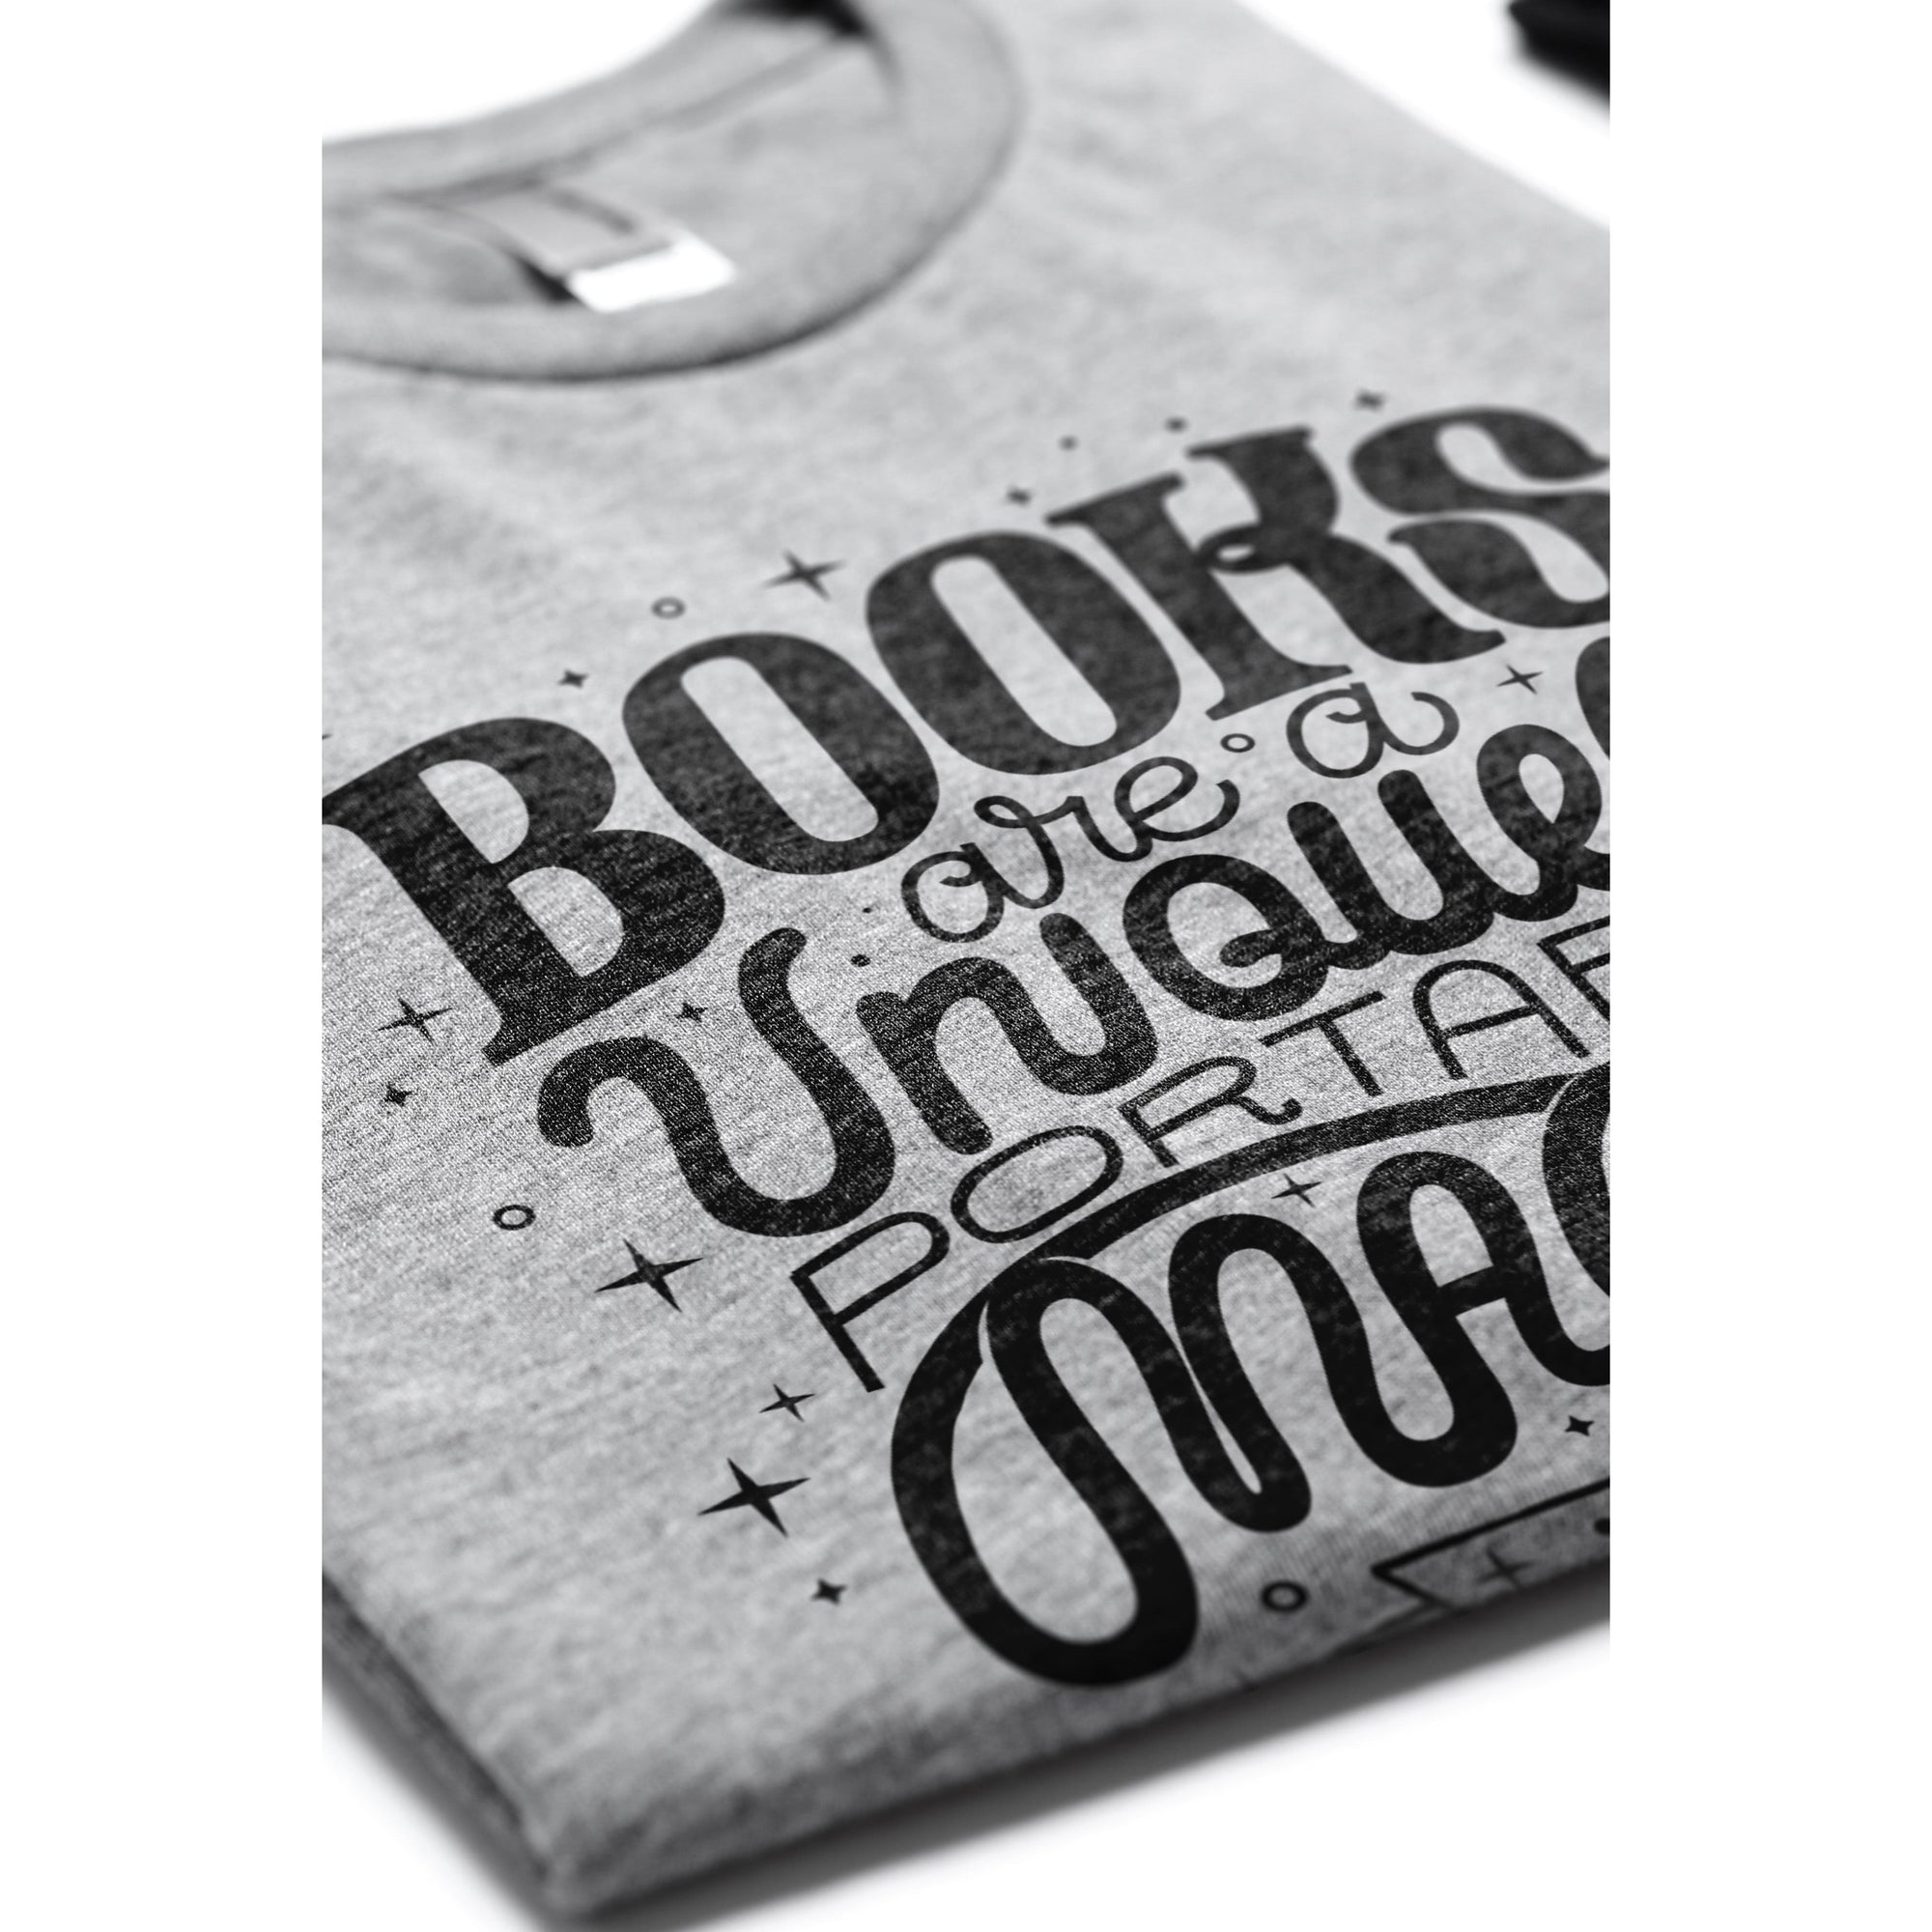 â€œBooks Are A Uniquely Portable Magic.â€ - S.K. (Reference: Stephen King, A Memoir Of The Craft) - threadtank | stories you can wear